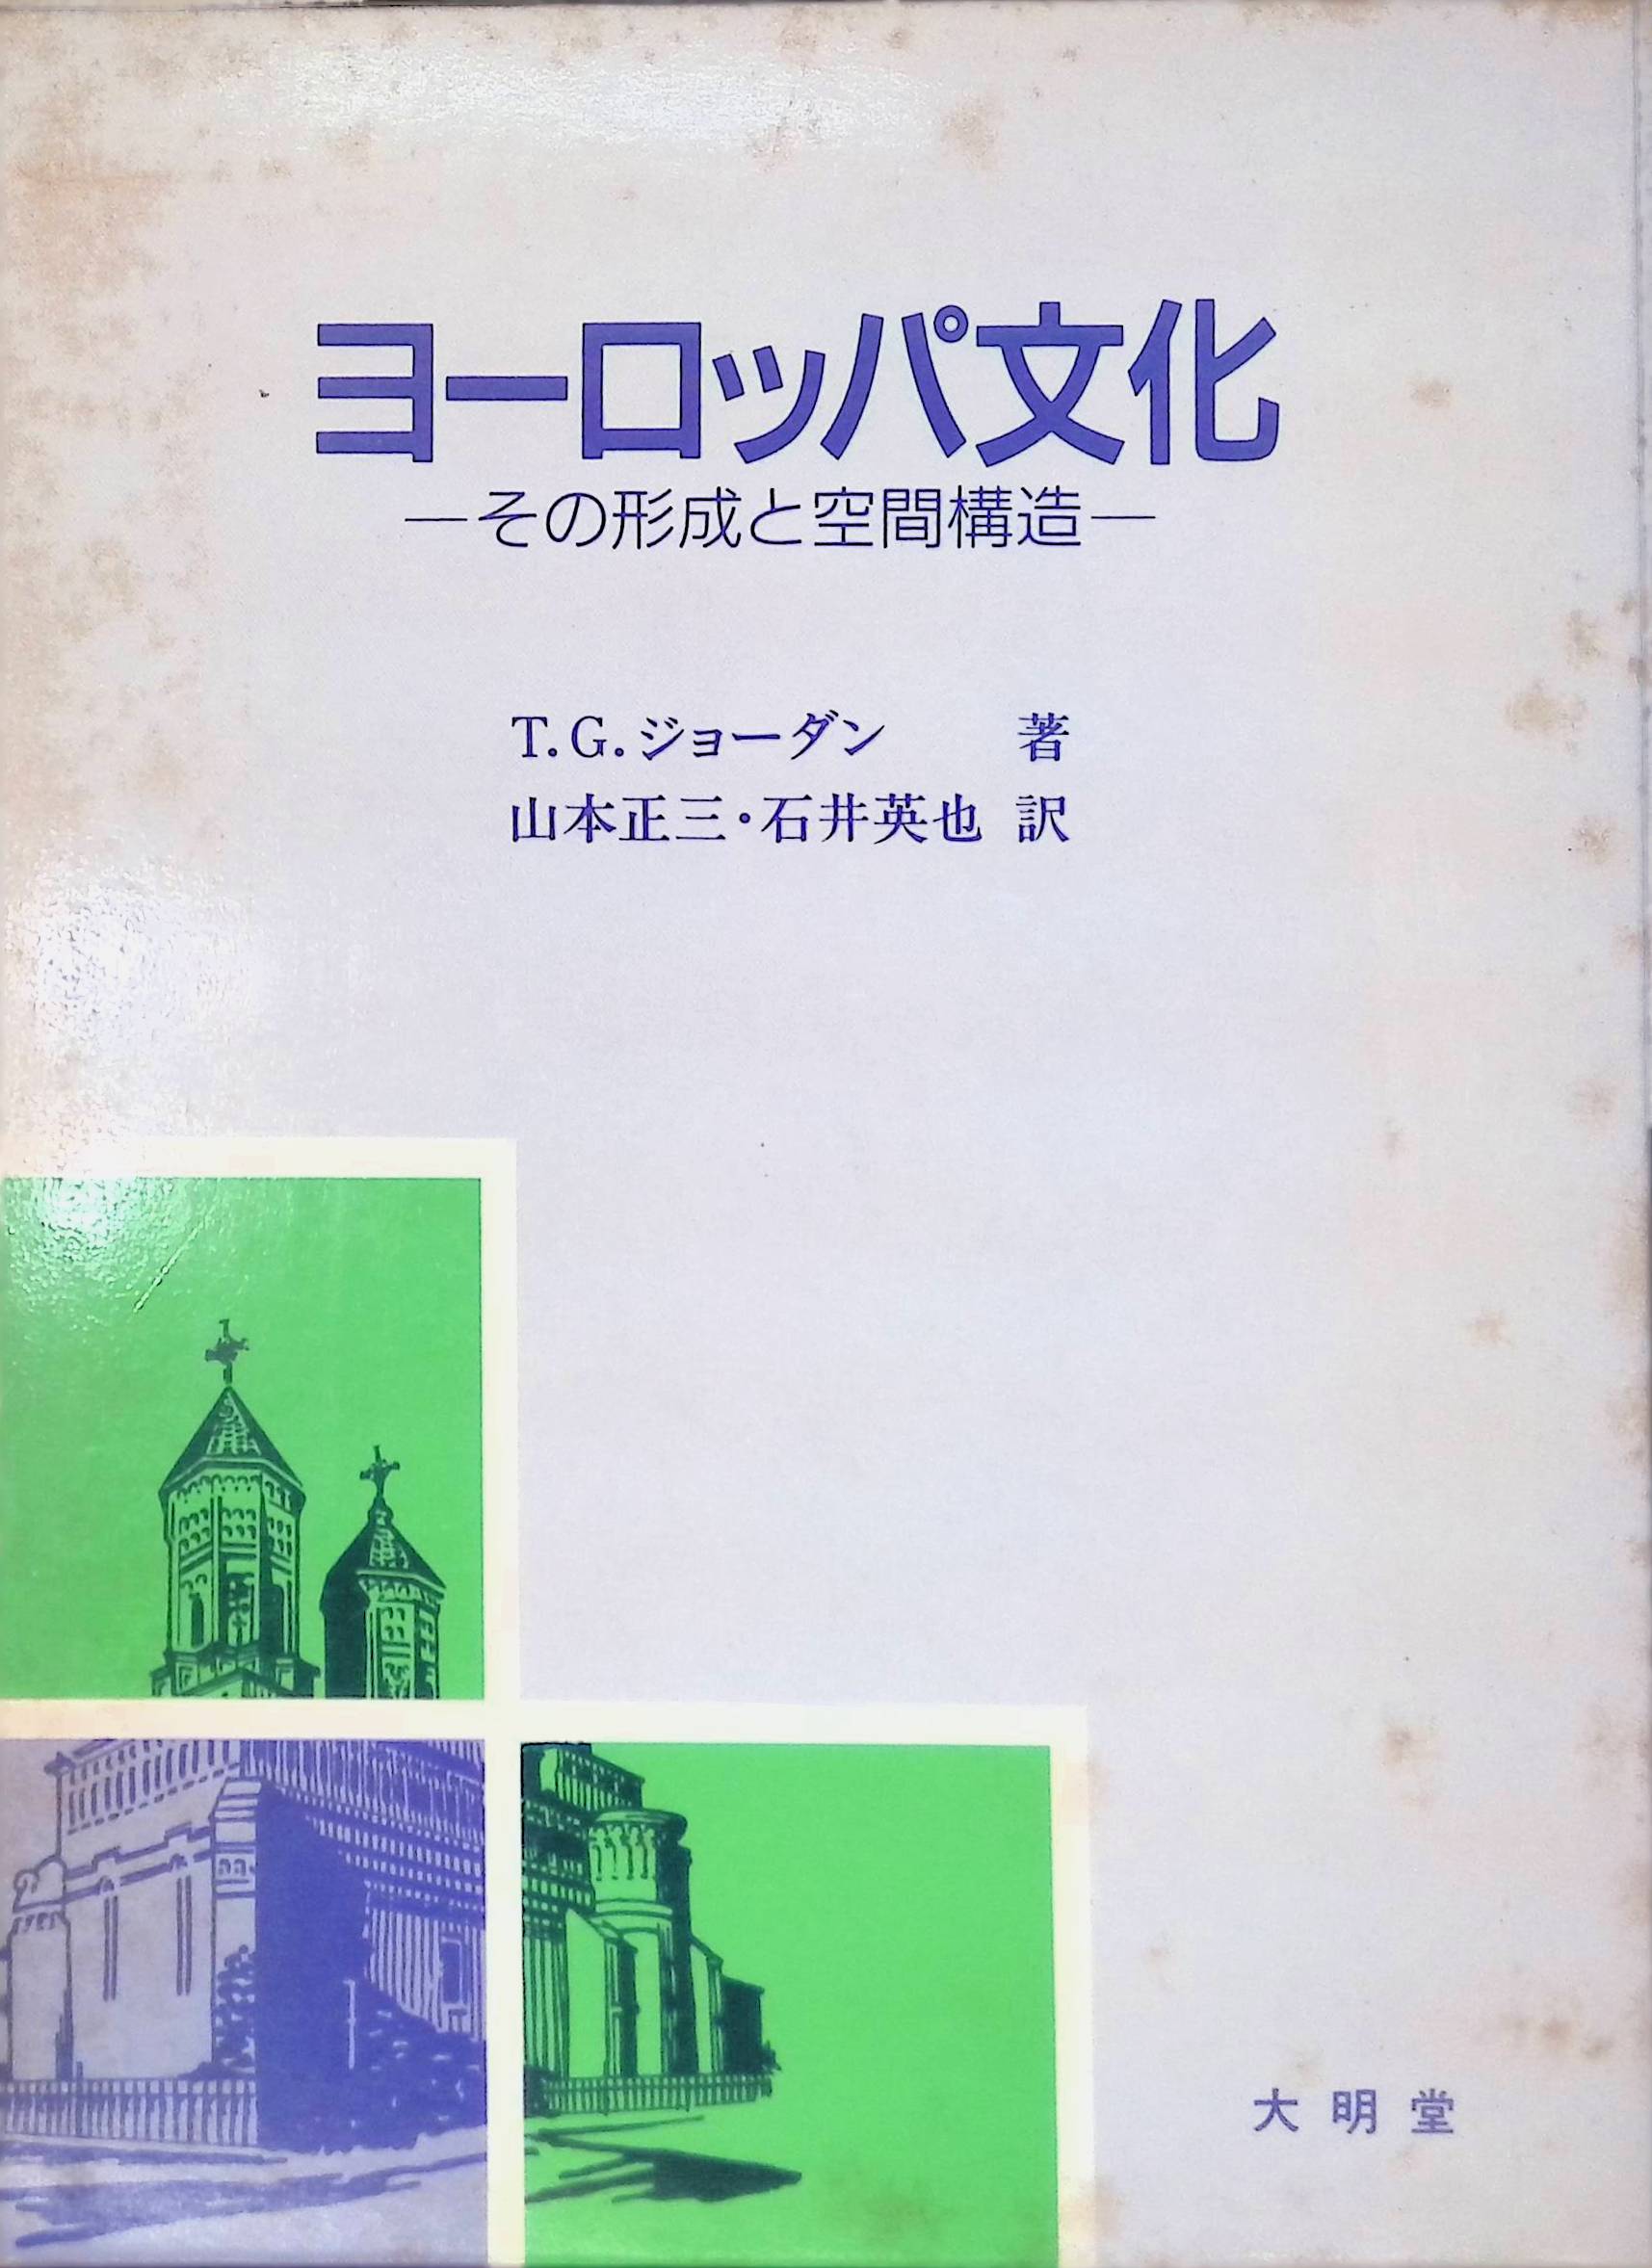 ヨーロッパ文化―その形成と空間構造[テリー・G. ジョーダン](大明堂)(ISBN:4470430277)